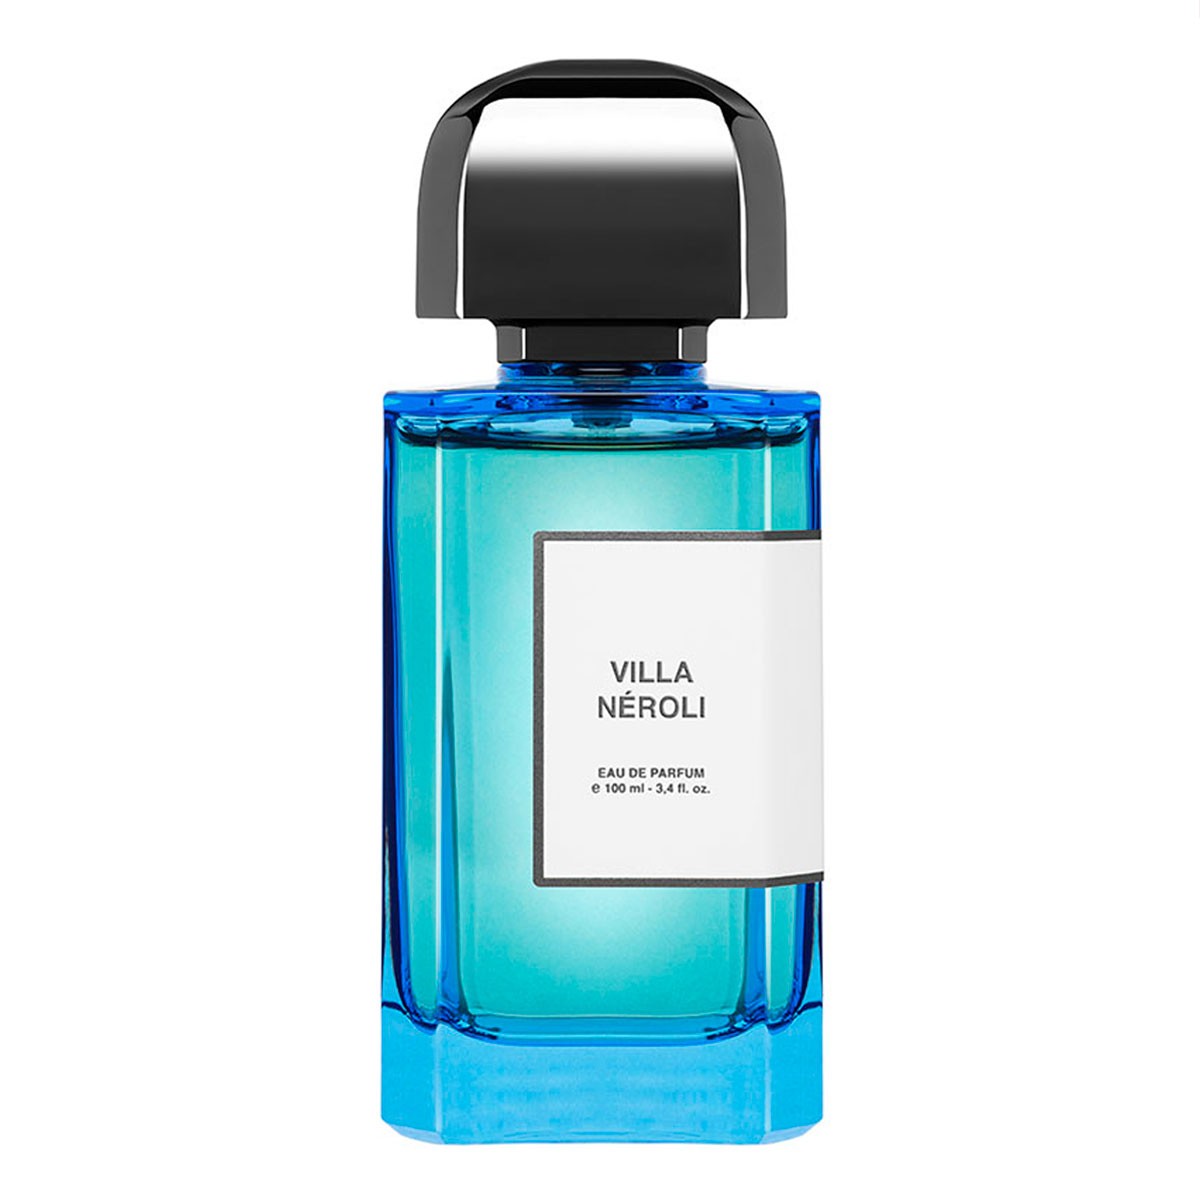 Descubre el perfume nicho Villa Neoril de BDK Parfums. En exclusiva en jcApotecari.